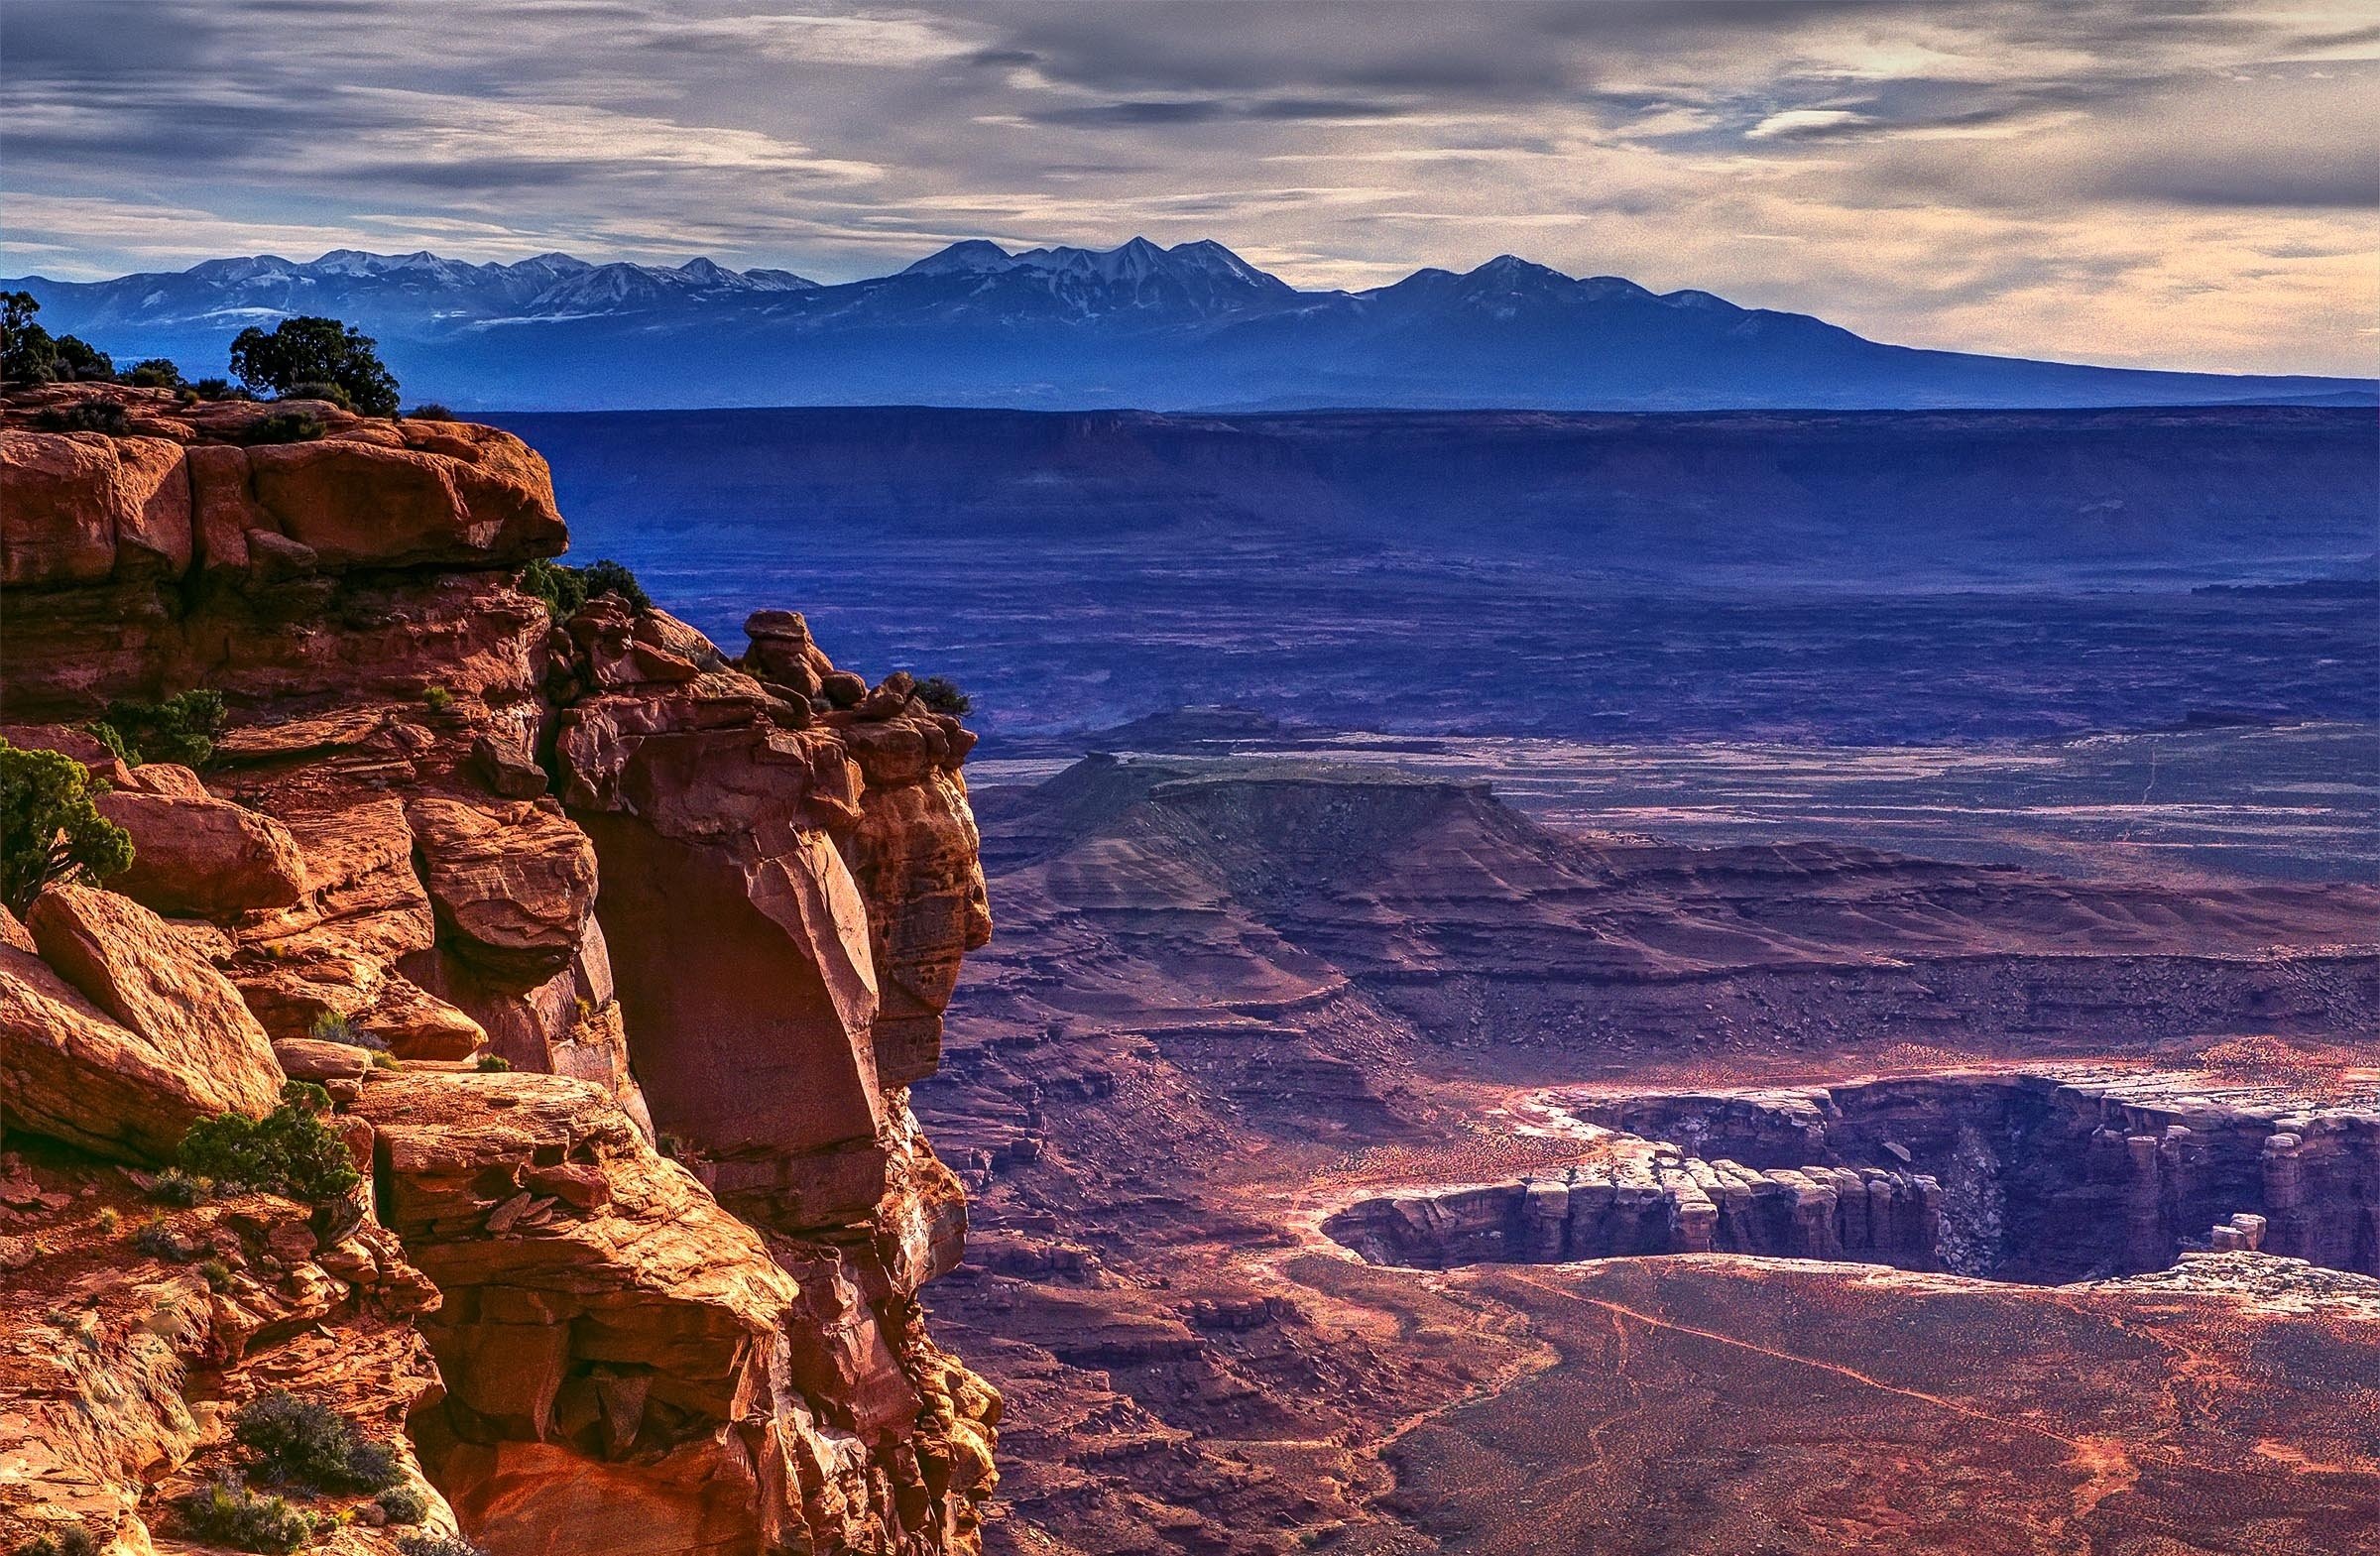  Park near Moab Utah desert landscape mountains wallpaper background 2400x1569